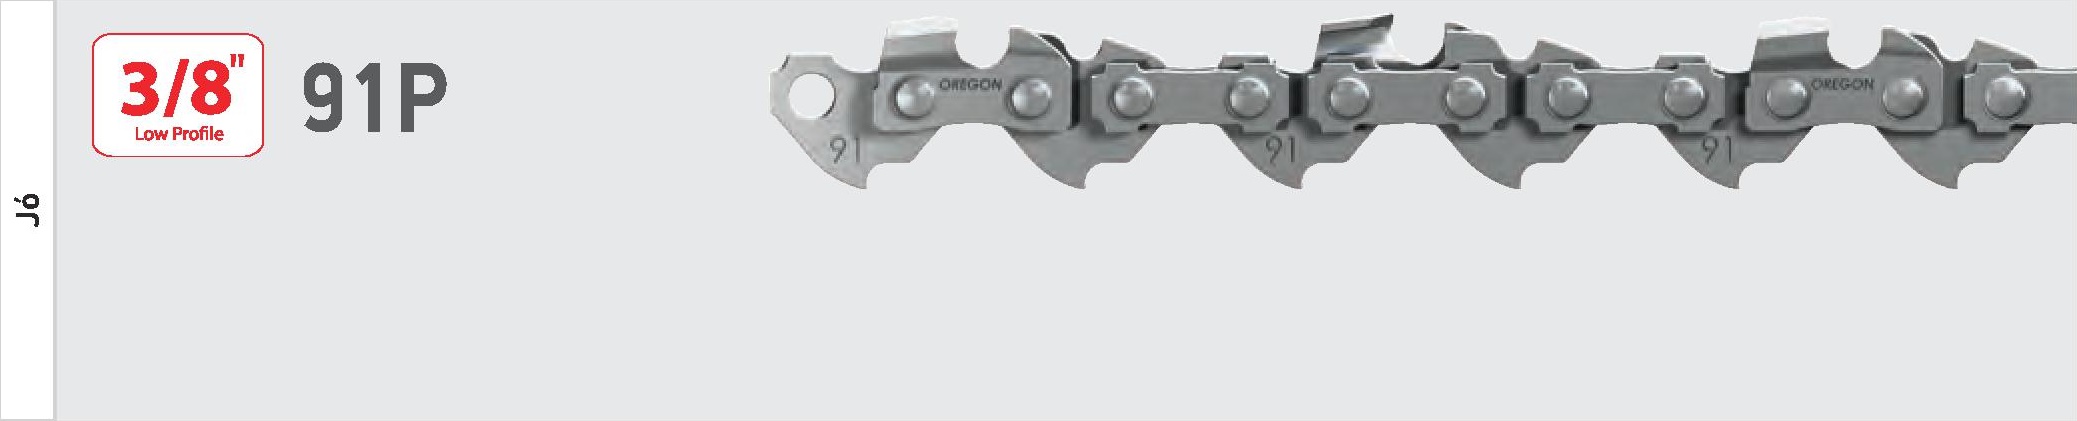 Oregon 91P láncfűrész lánc